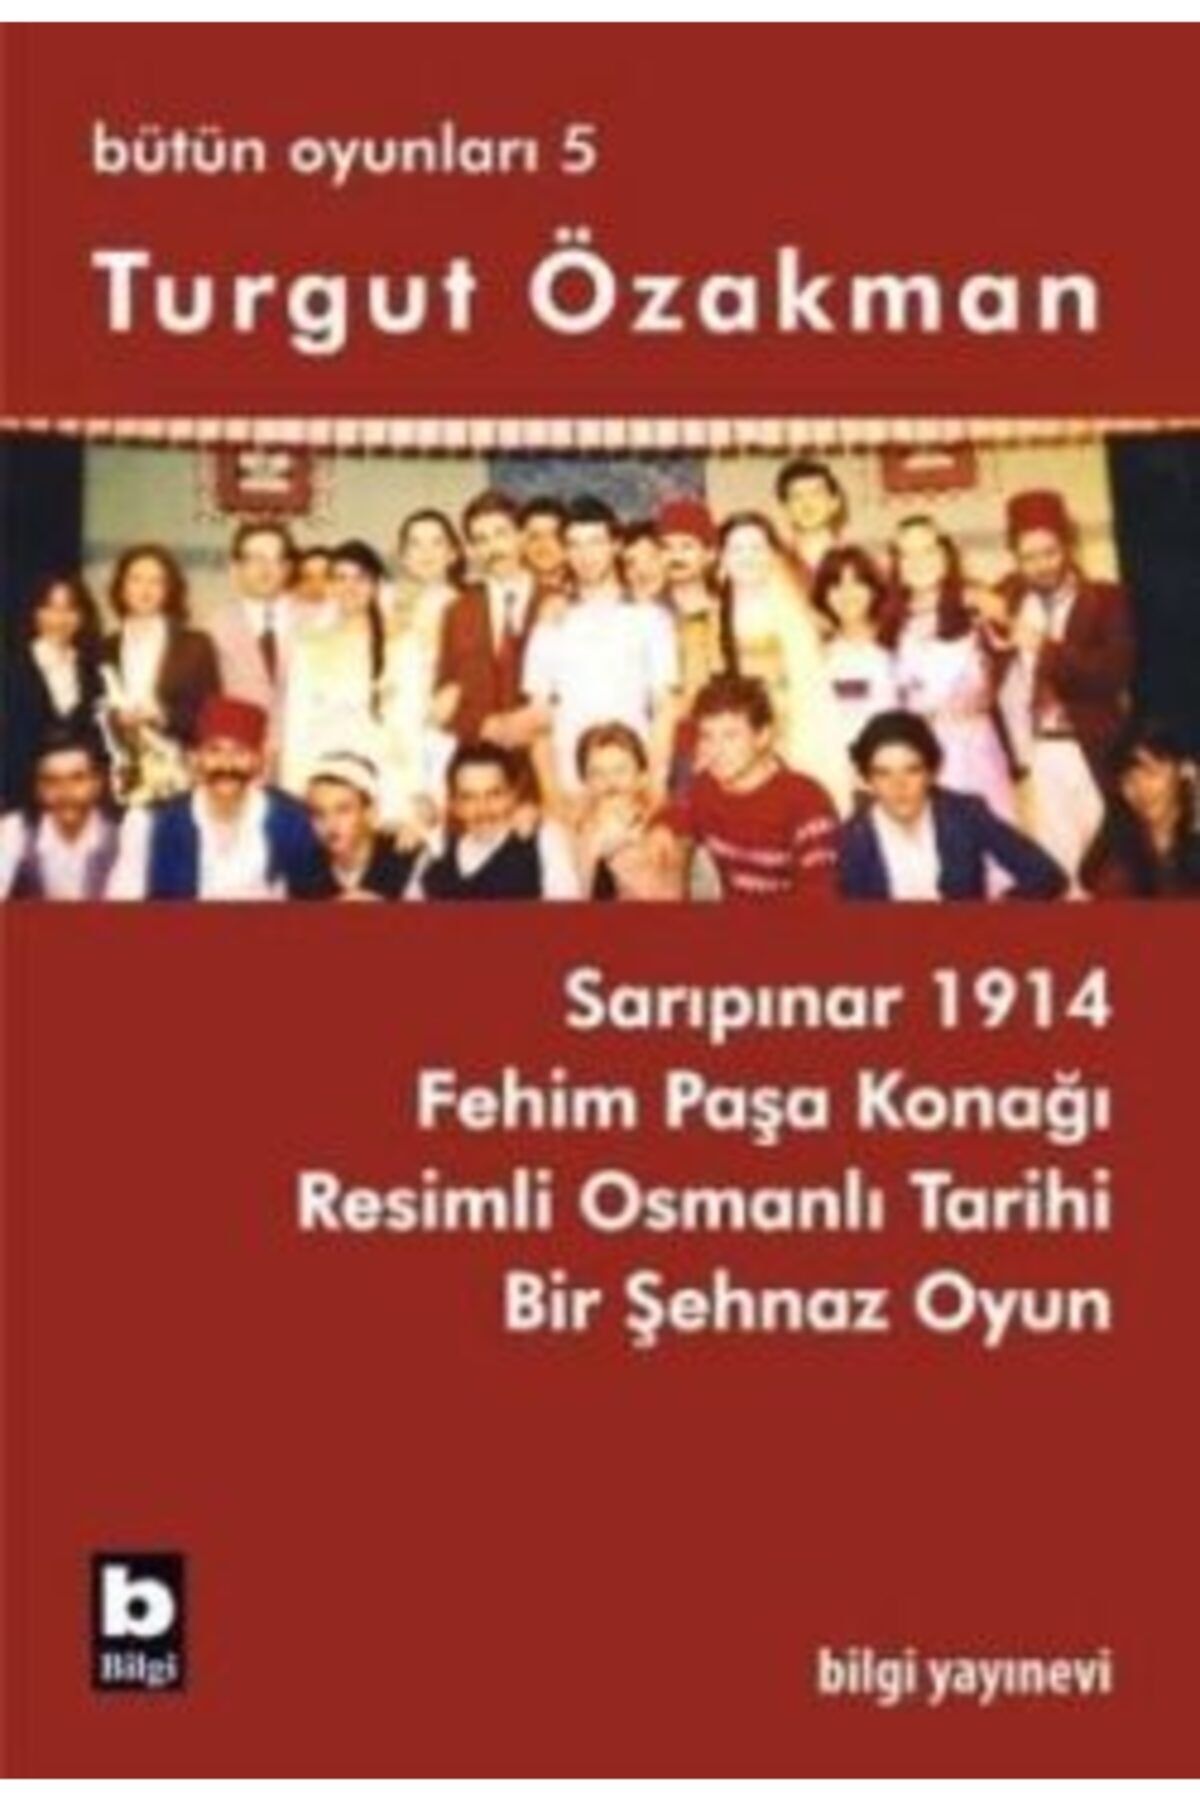 Bilgi Yayınları Turgut Özakman Bütün Oyunları 5 / Turgut Özakman /